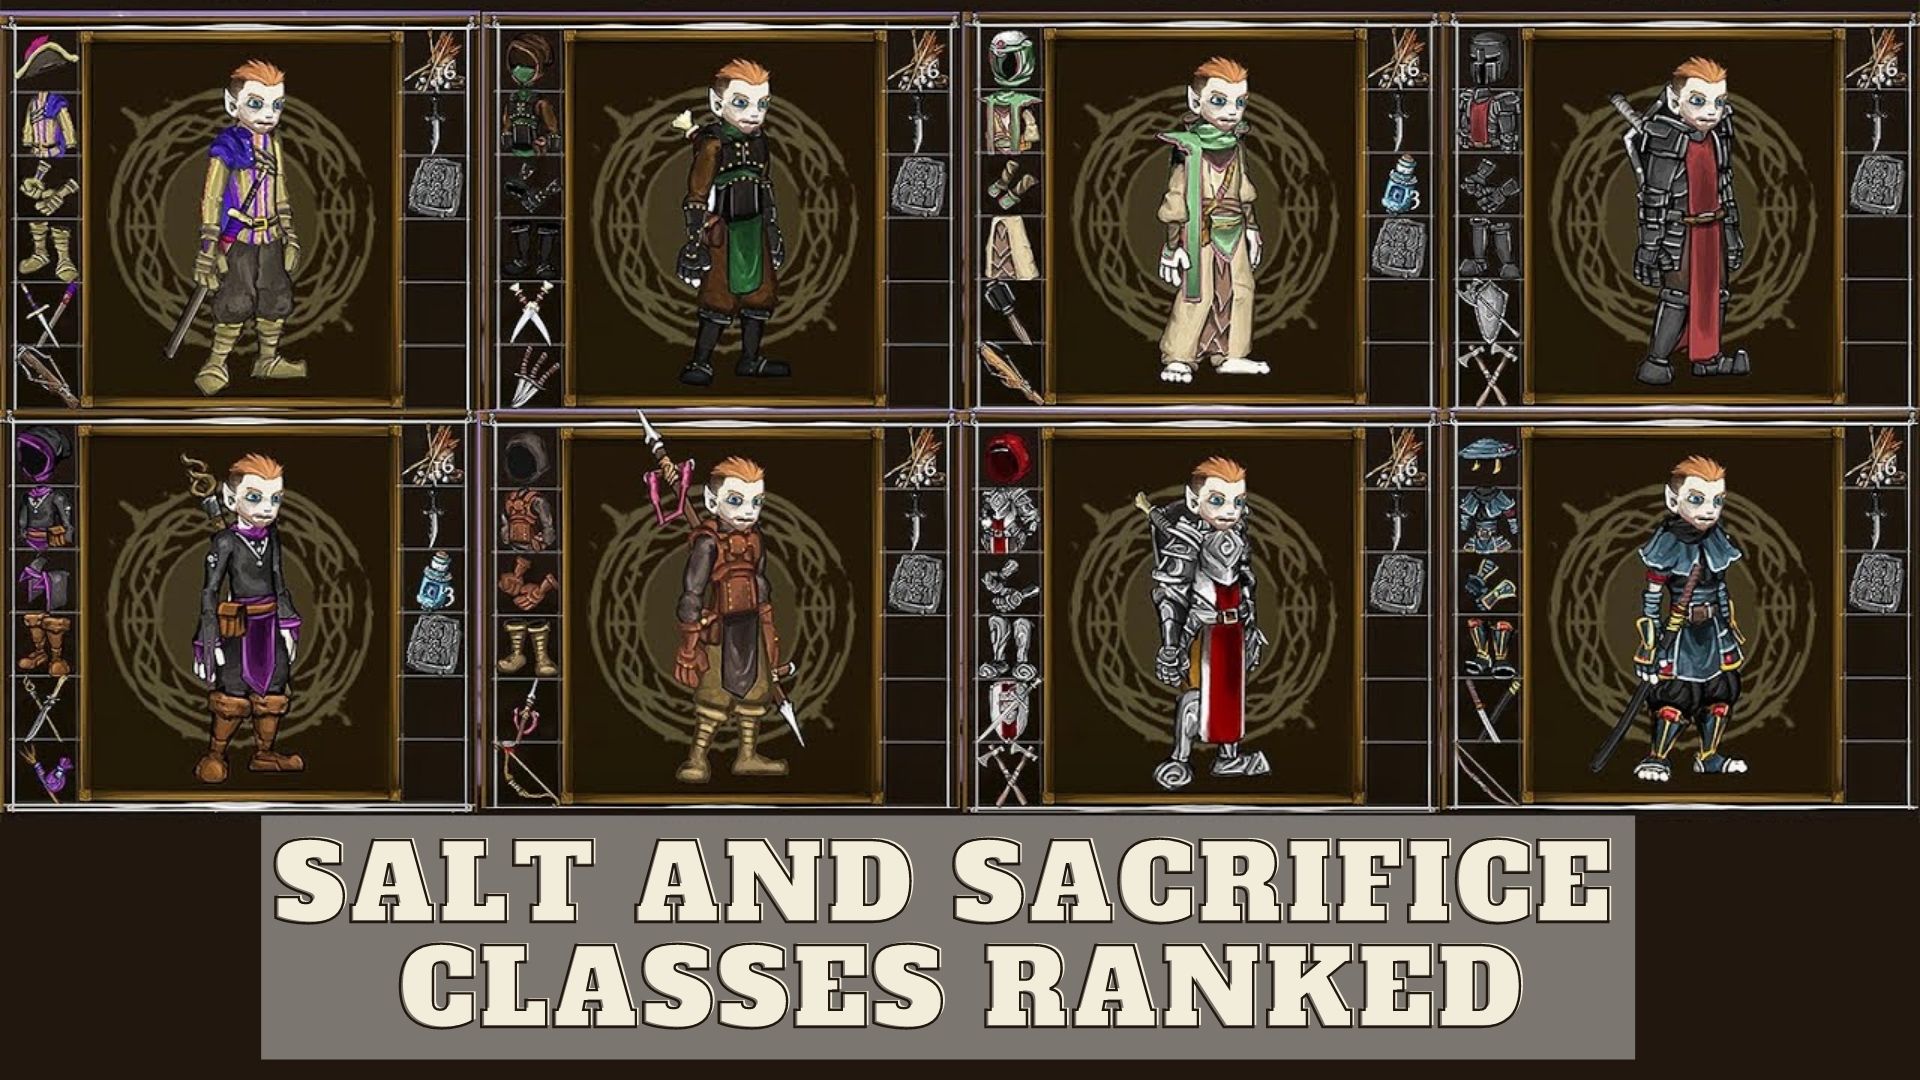 All Salt and Sacrifice classes